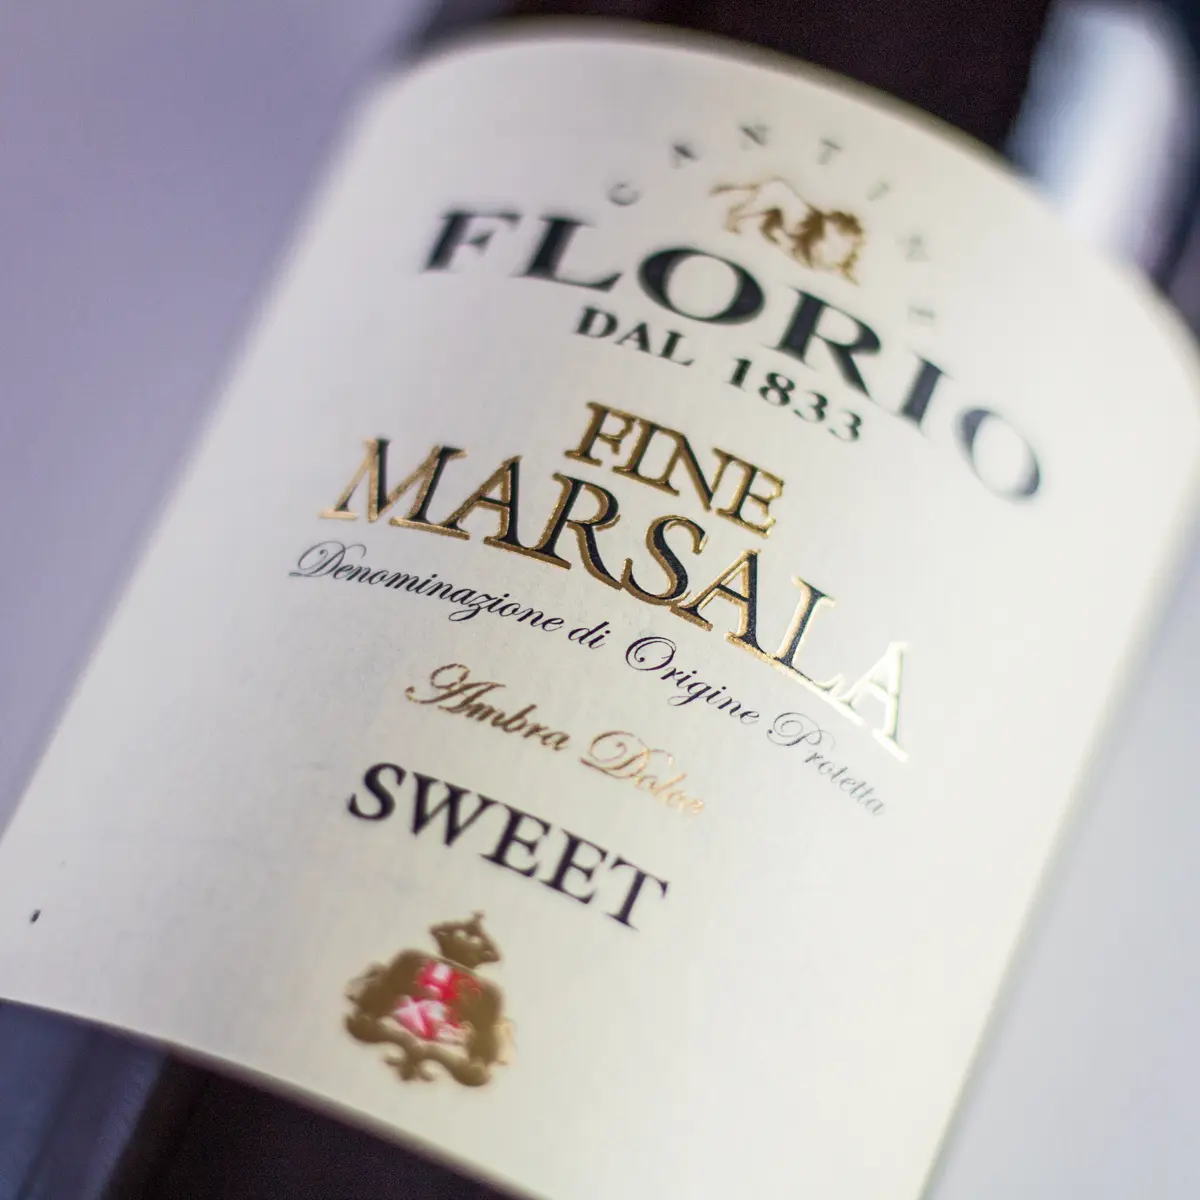 Stor fyrkantig Marsala Wine -ersättningsbild som visar flaskans etikett.